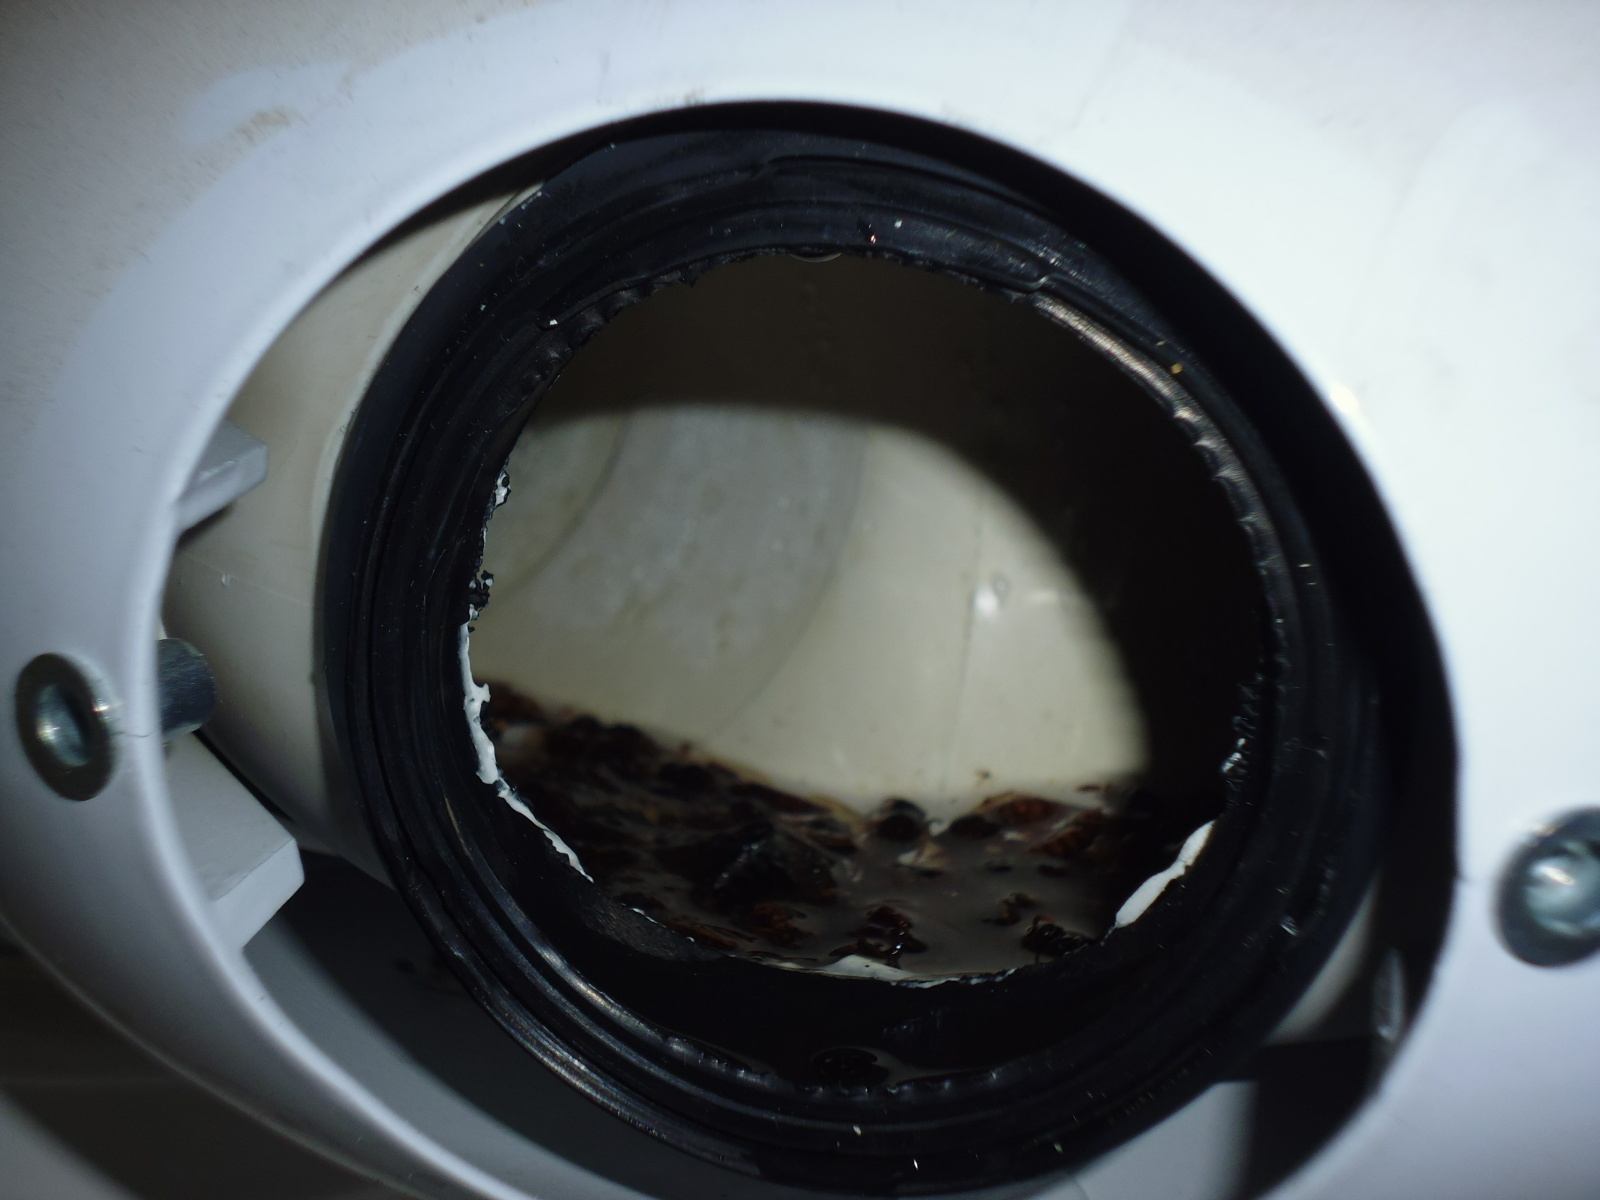 odkouření kondenzačního kotle při kontrole endoskopem - vosí hnízdo